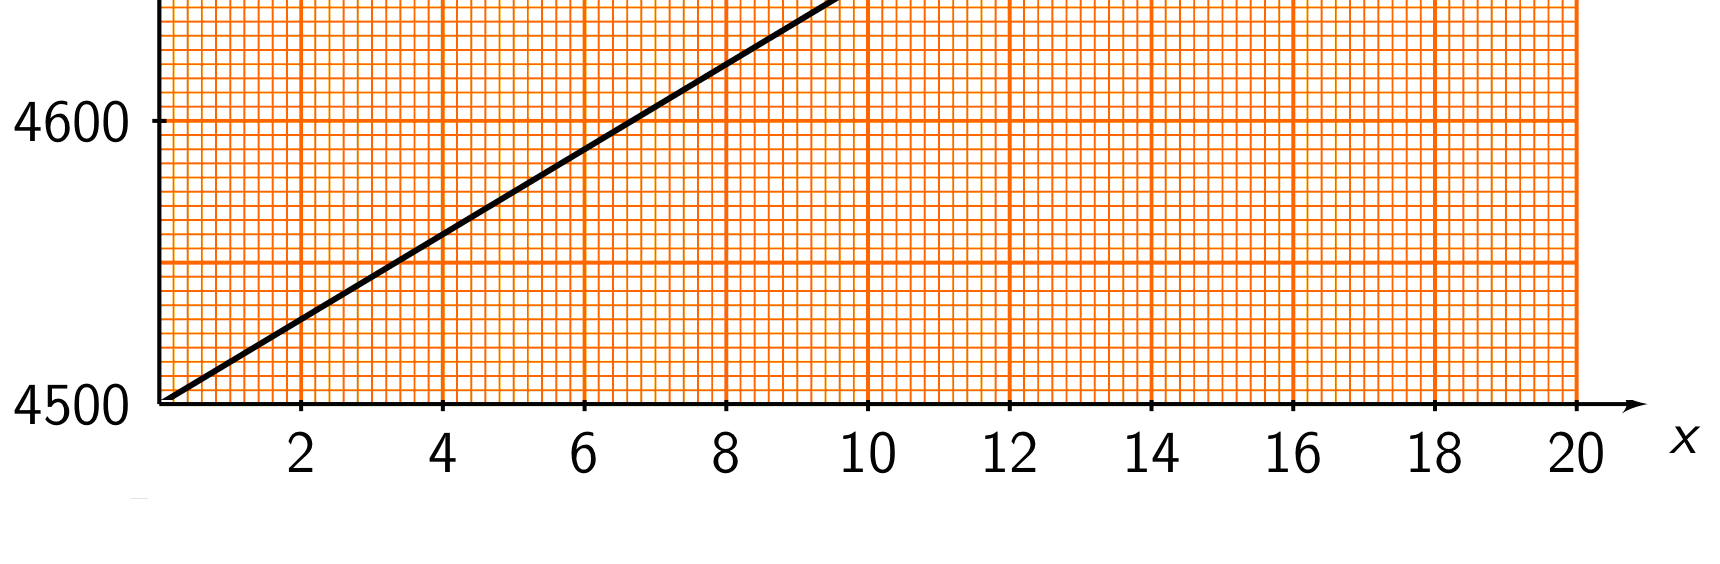 b Vi setter Xsca le = 5 og Yscale = 10, og tegner grafen igjen. Da blir bildet som under. Legg merke til at grafen er den samme, det er bare inndelingene på aksene som endres. 3.